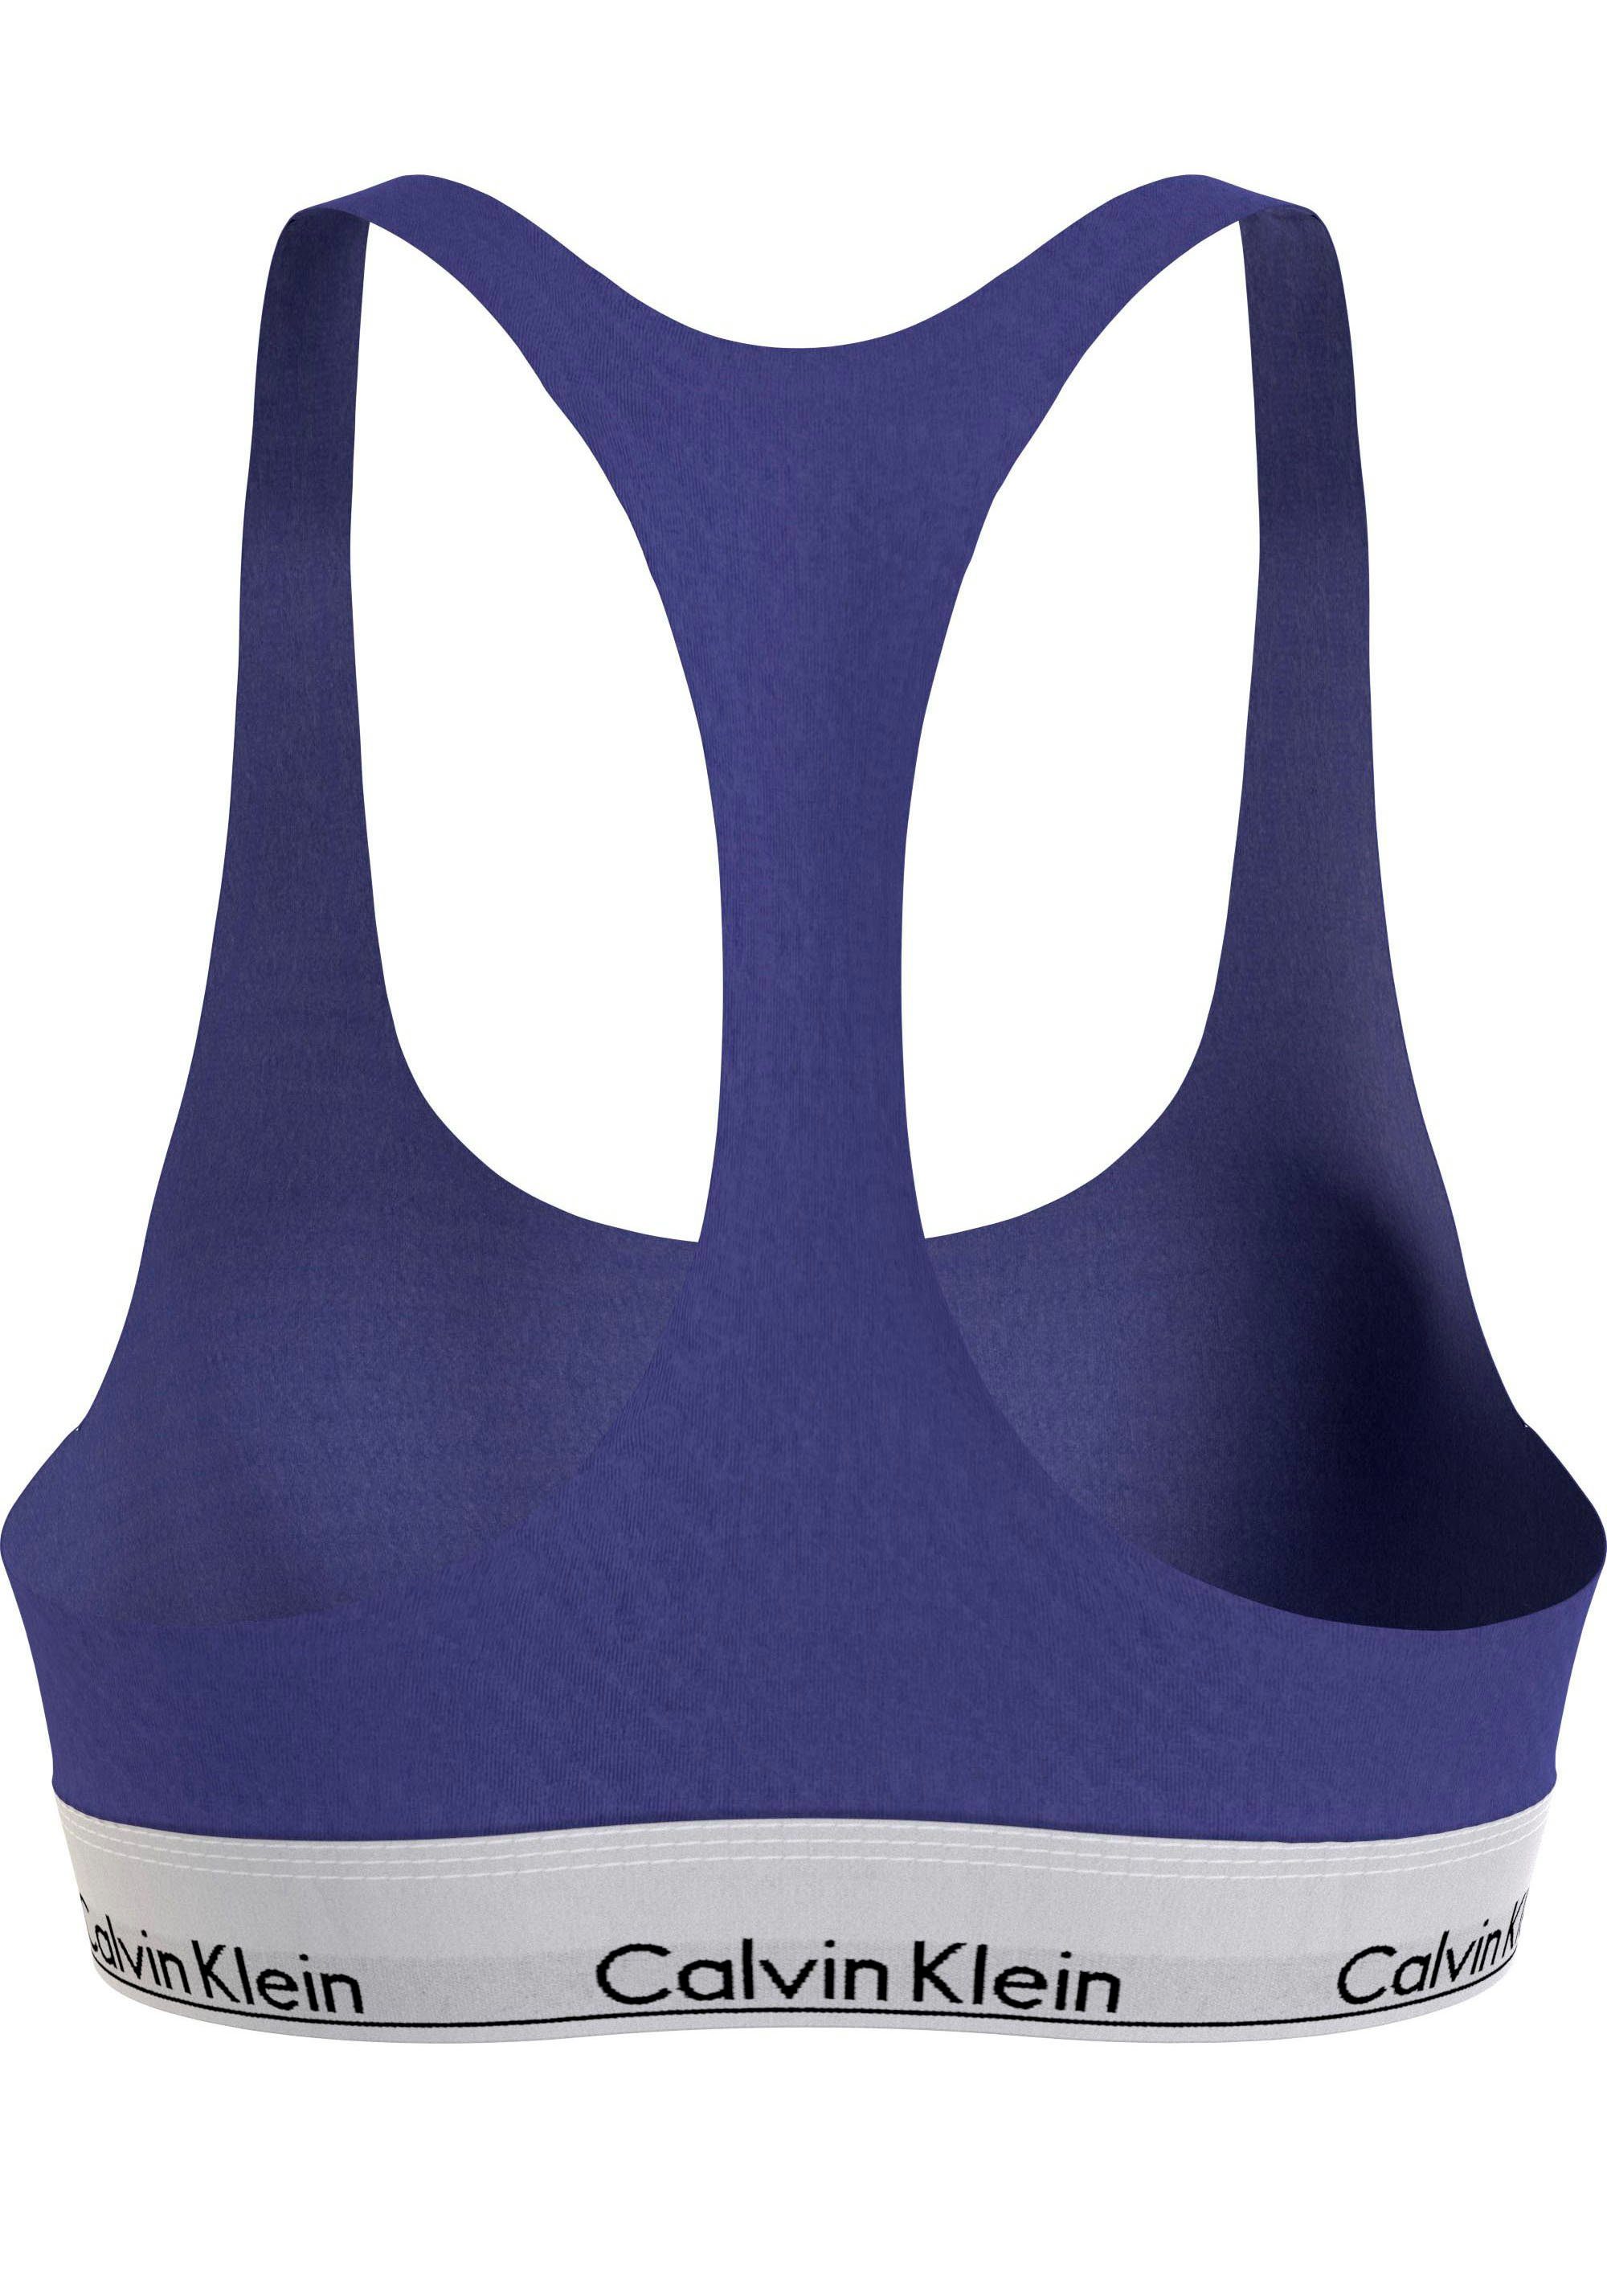 Calvin Klein blau Größen Size UNLINED Underwear in BRALETTE Bralette-BH Plus (FF)